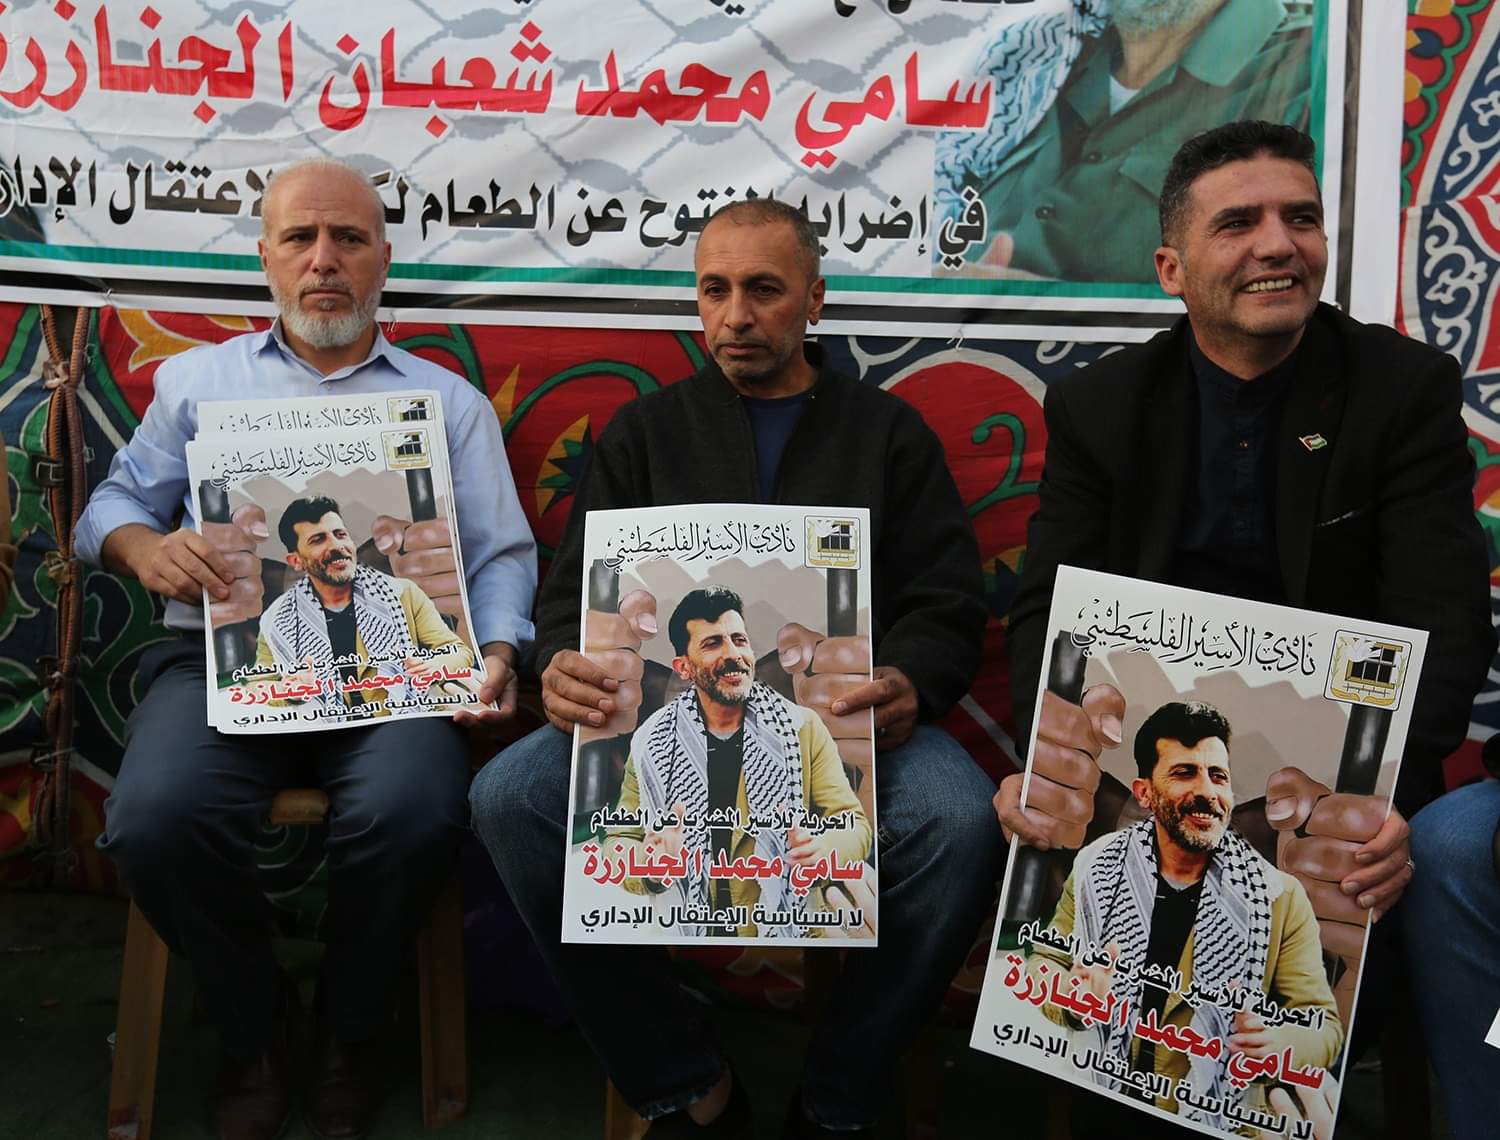 صورة جمعية نادي الأسير الفلسطيني: على مدار أربع سنوات، ثلاثة إضرابات خاضها الأسير سامي جنارزة وما يزال رفضاً لاعتقاله الإداري